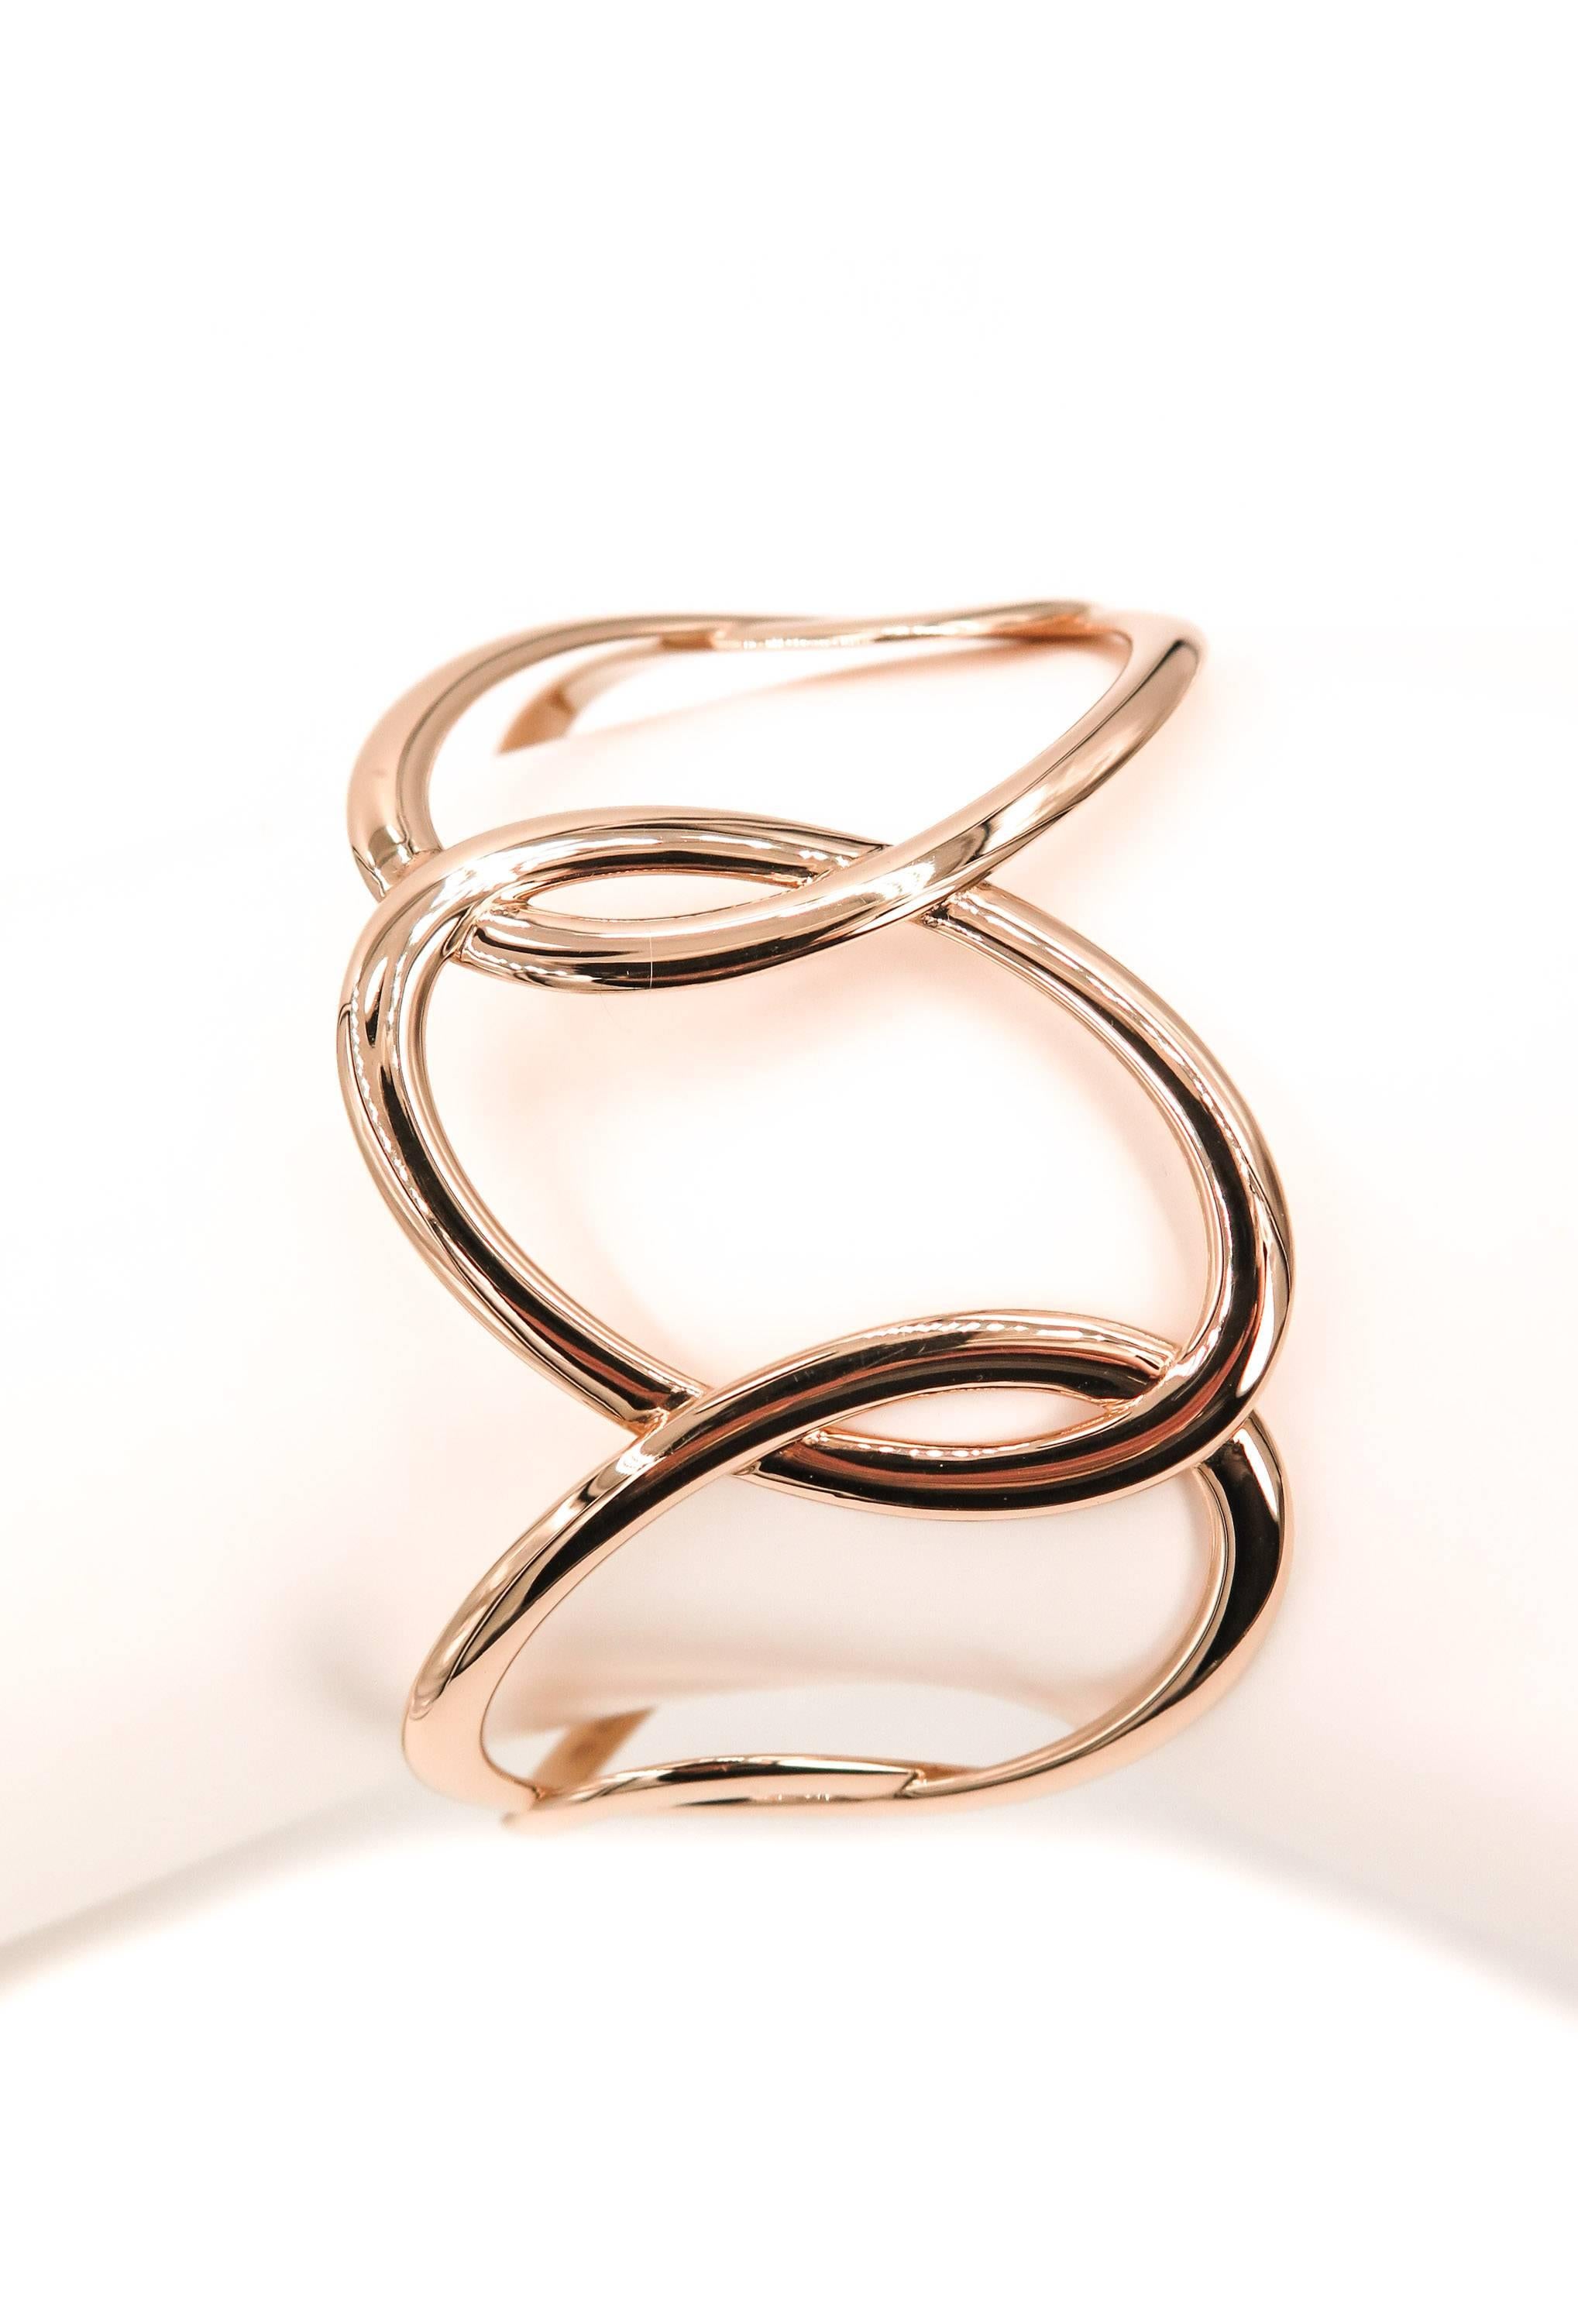 Hiroko Rose Gold Cuff Bracelet by Mattioli 2